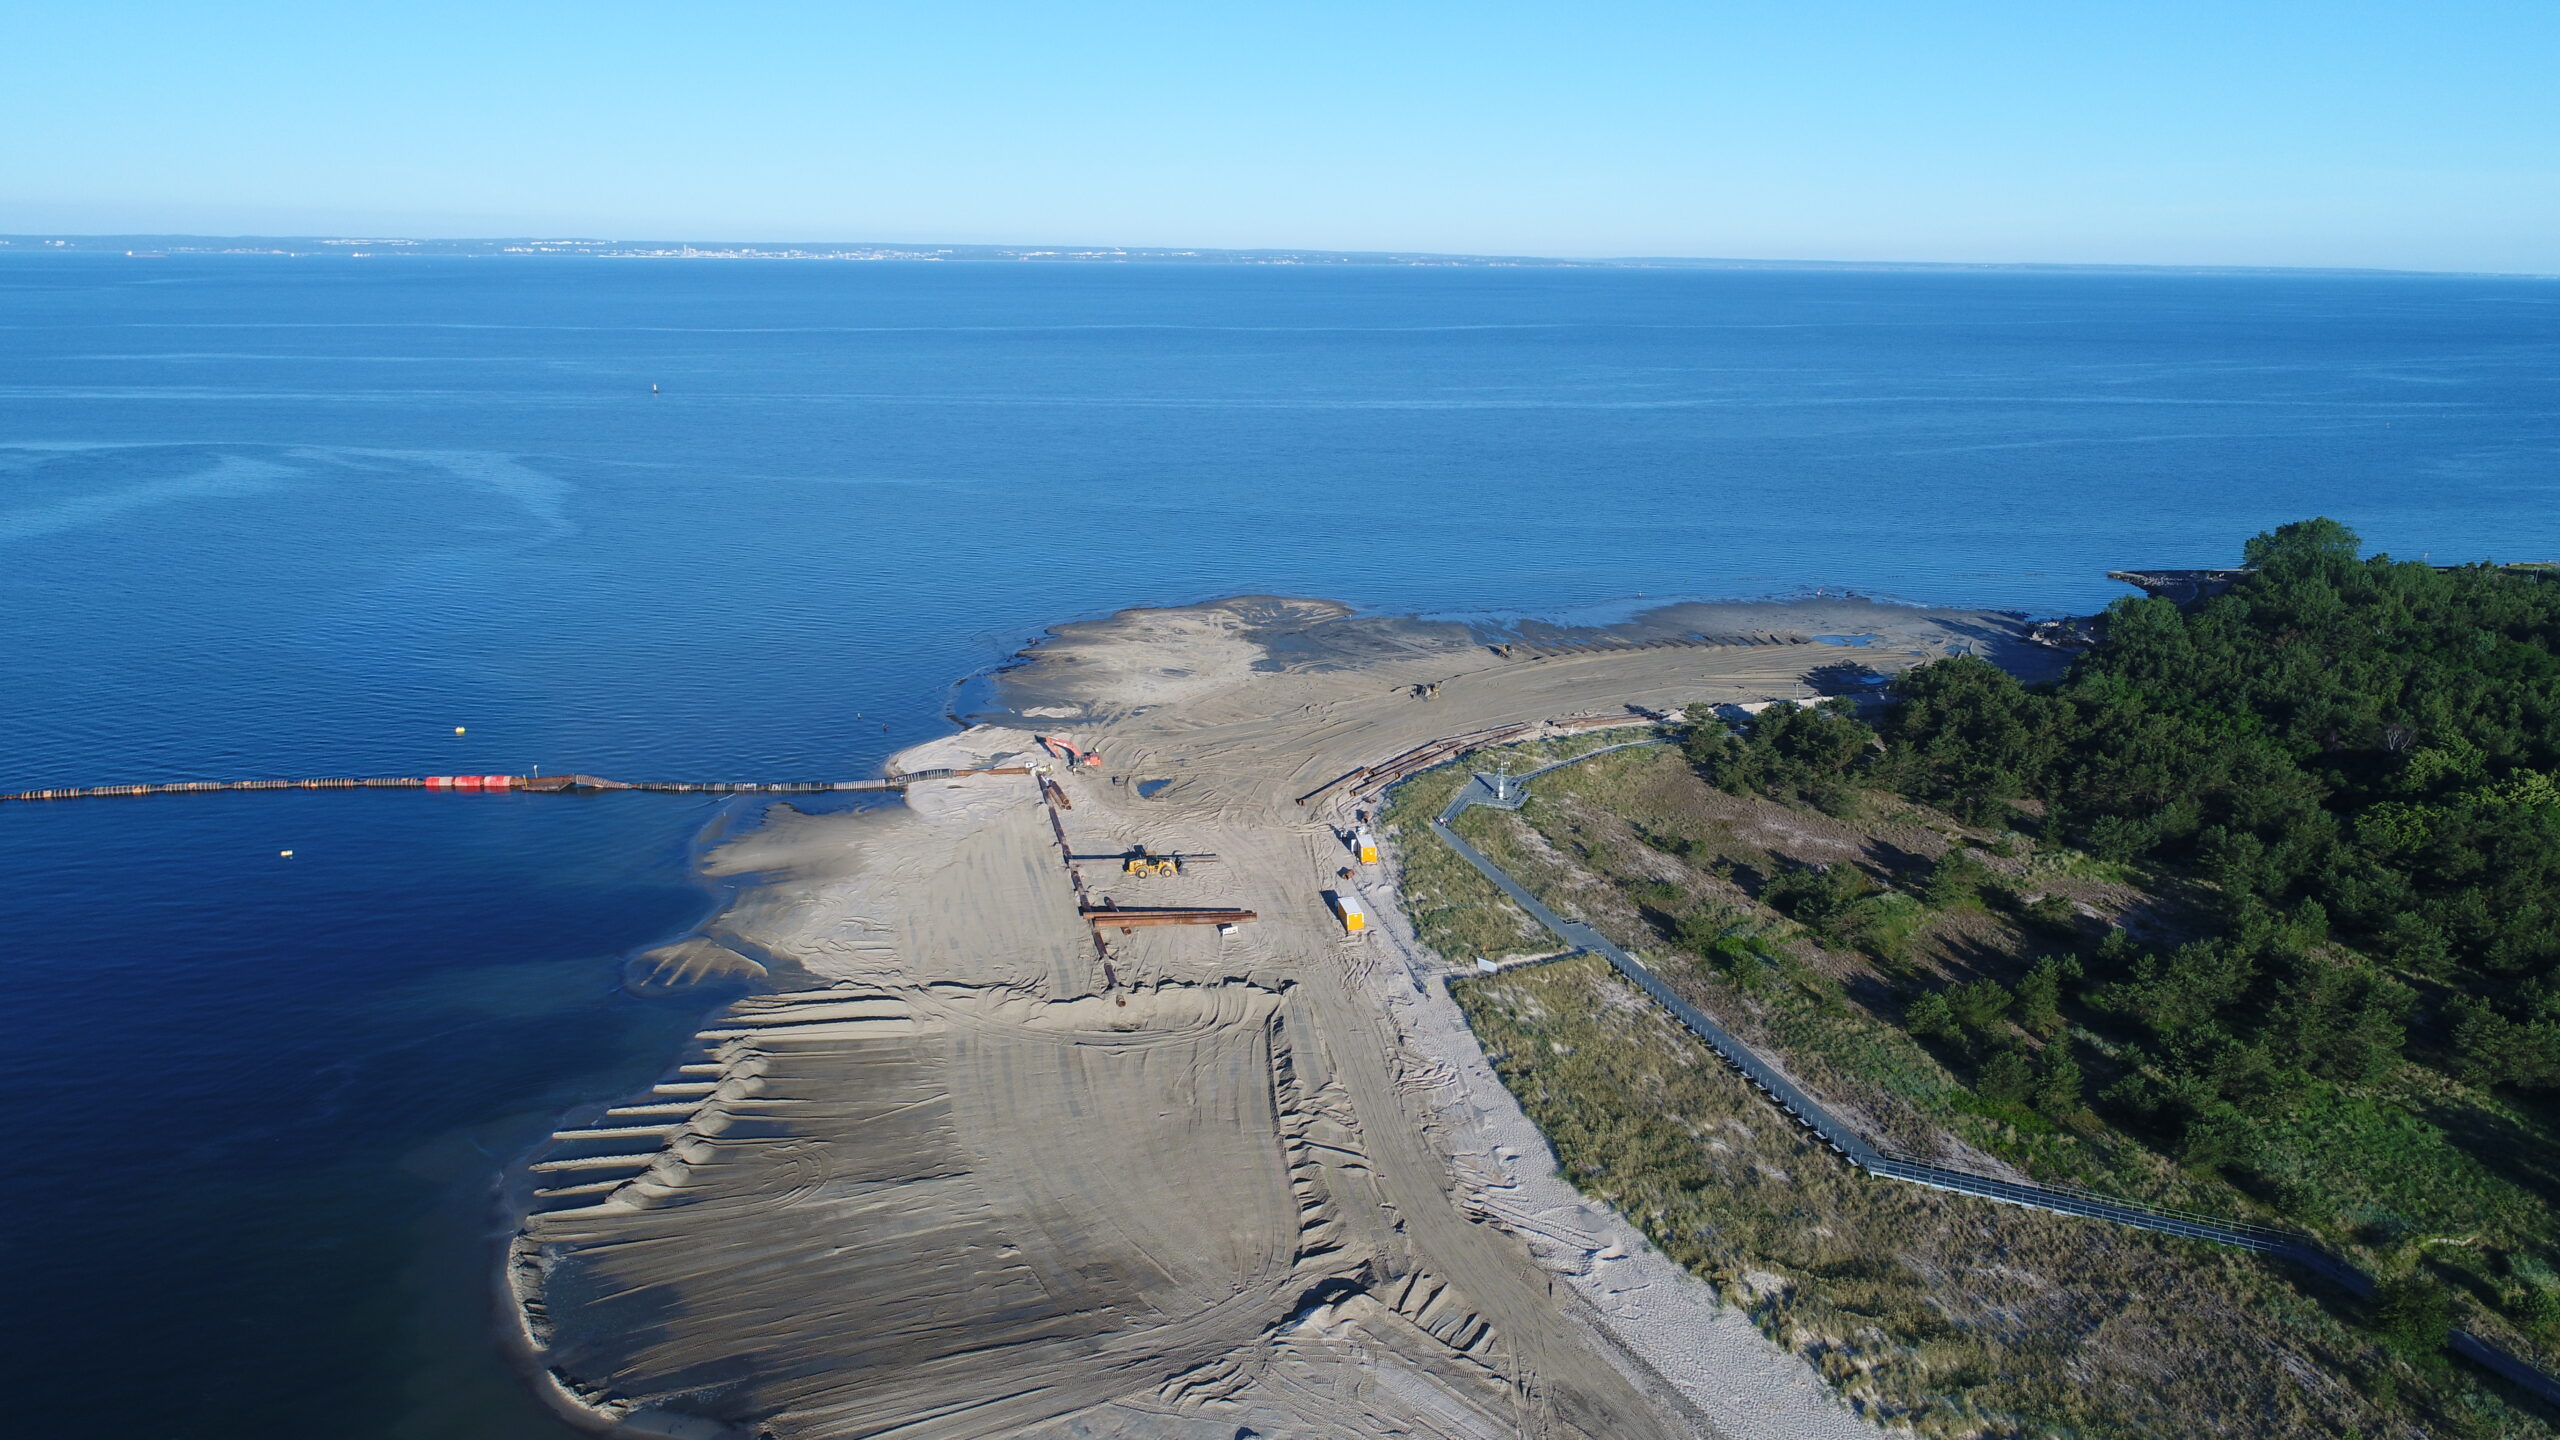 Refulacja plazy na Cyplu Helskim - plaża i instalacje hydrotechniczne